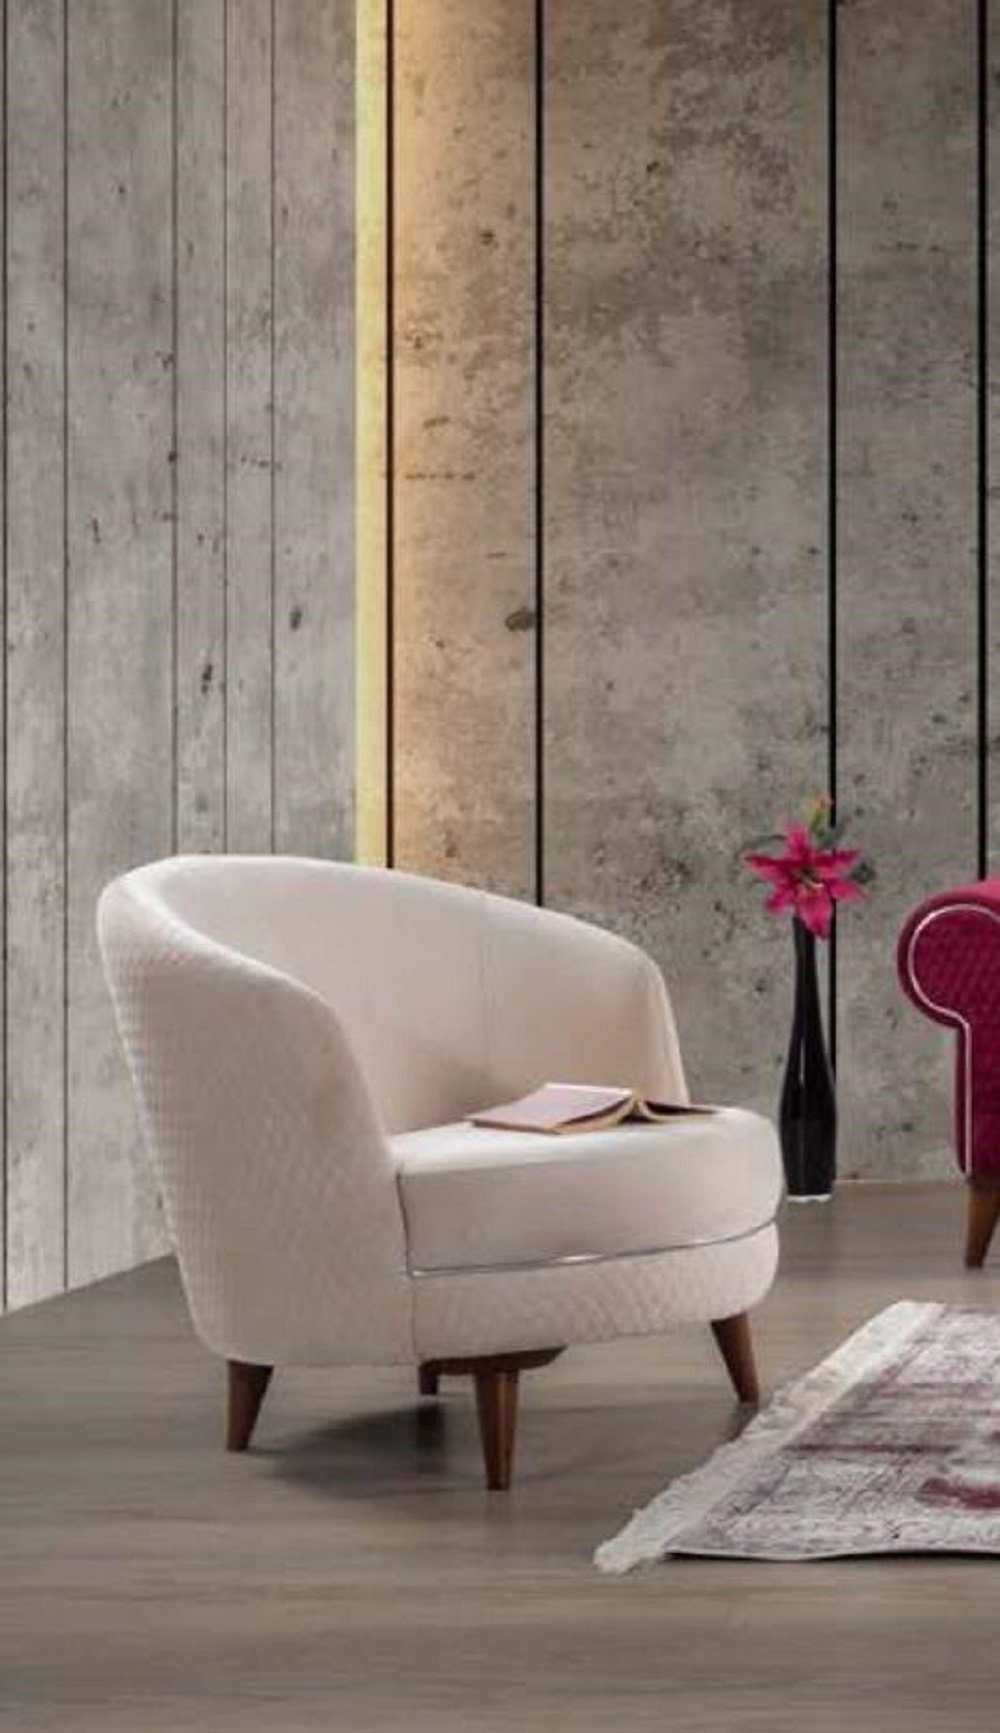 Freigabe JVmoebel Sessel Einsitzer Sessel Textil Textil Polster Couch Neu Weiß Wohnzimmer Möbel